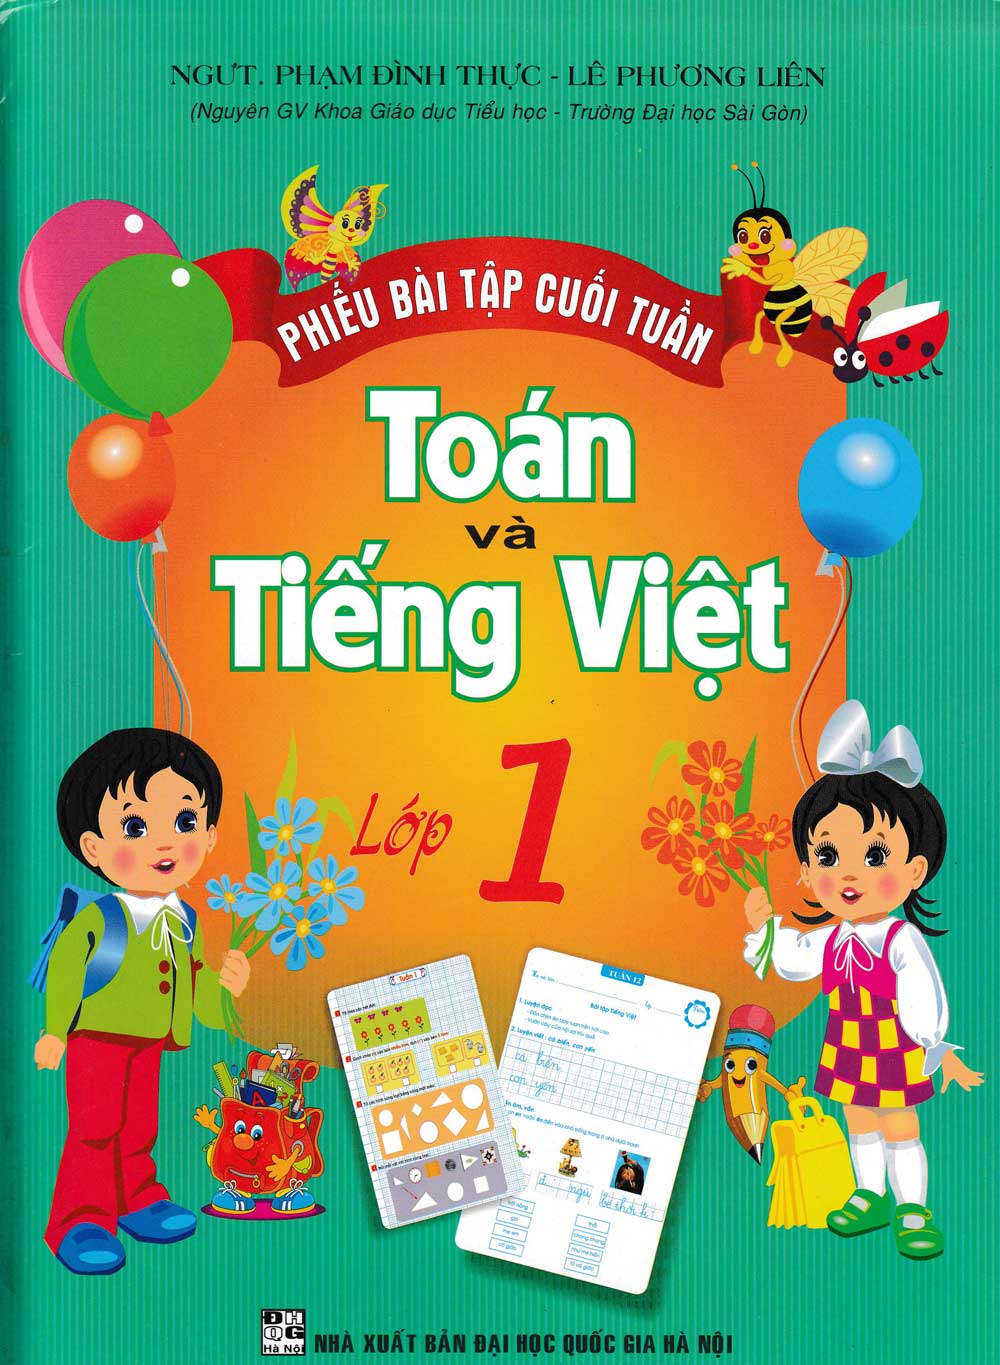 Sách - Phiếu Bài Tập Cuối Tuần Toán - Tiếng Việt Lớp 1 (HA) - Newshop